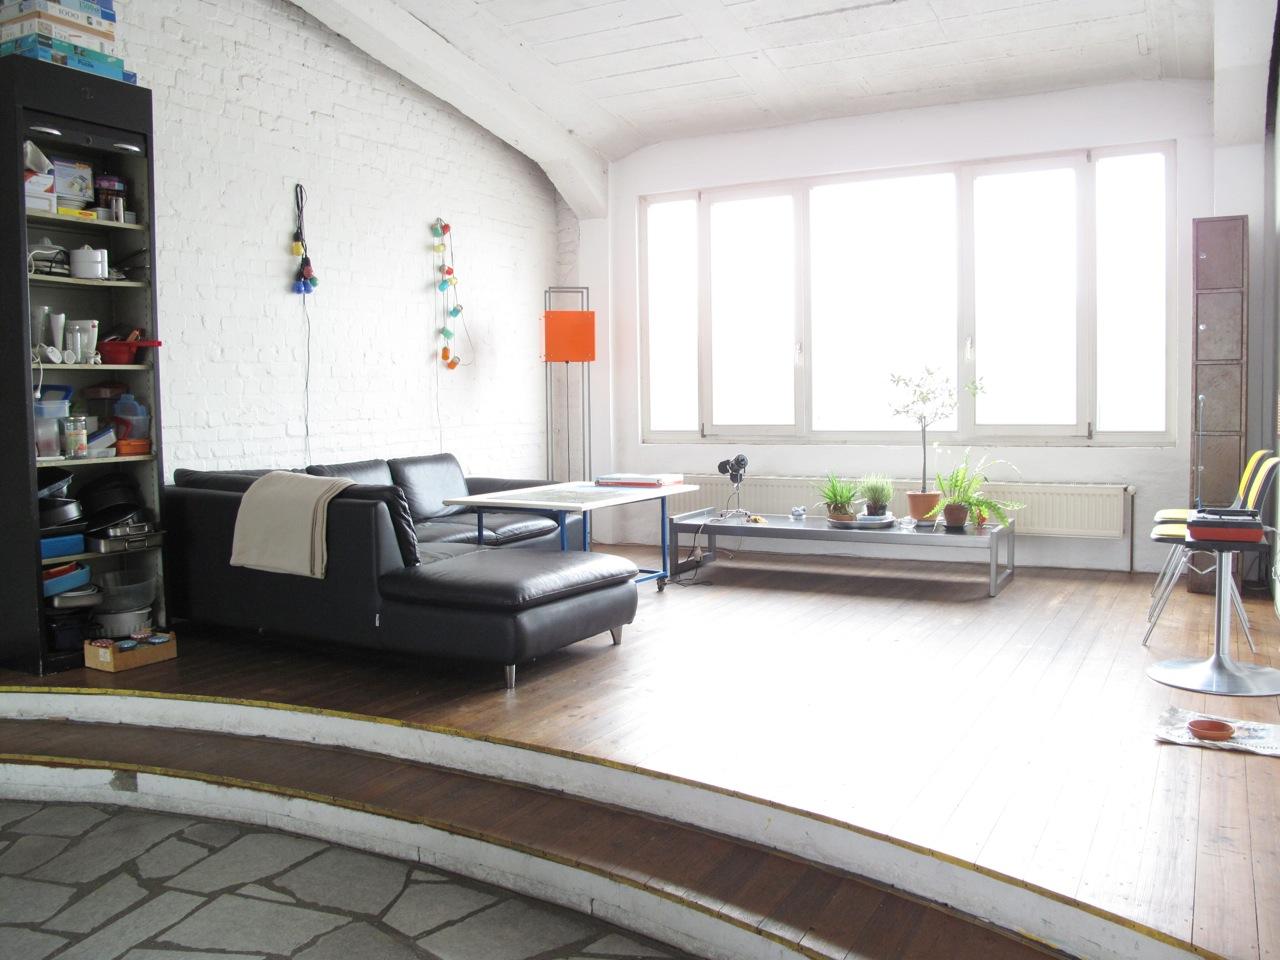 Erhöhung im Wohnzimmer mit Ledercouch #ledersofa #podest #steinbodenwohnzimmer ©scout for location